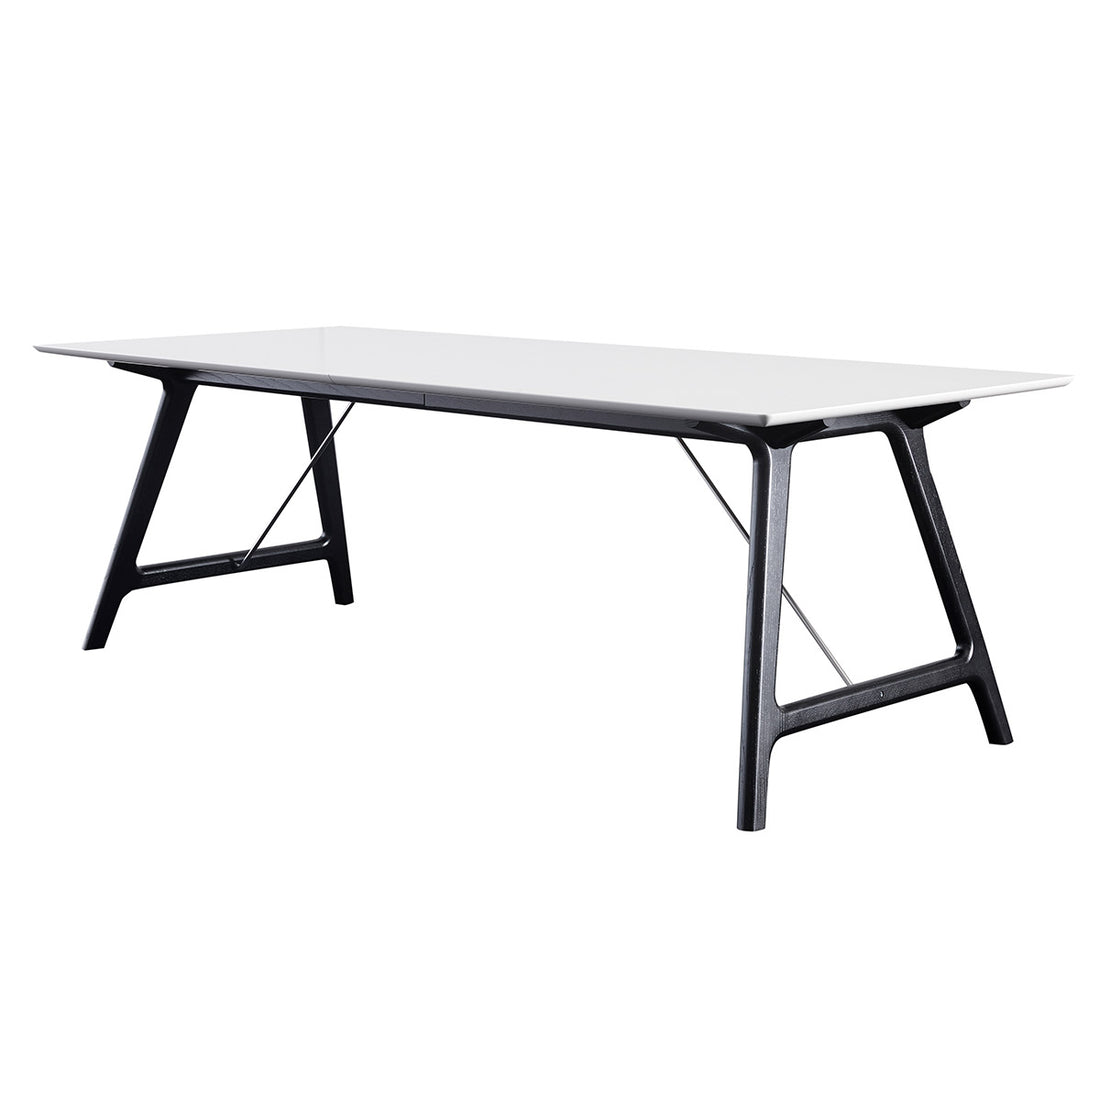 Andersen Furniture T7 udtræksbord i hvid laminat - understel i sort - 95x170xH72,5 cm - DesignGaragen.dk.